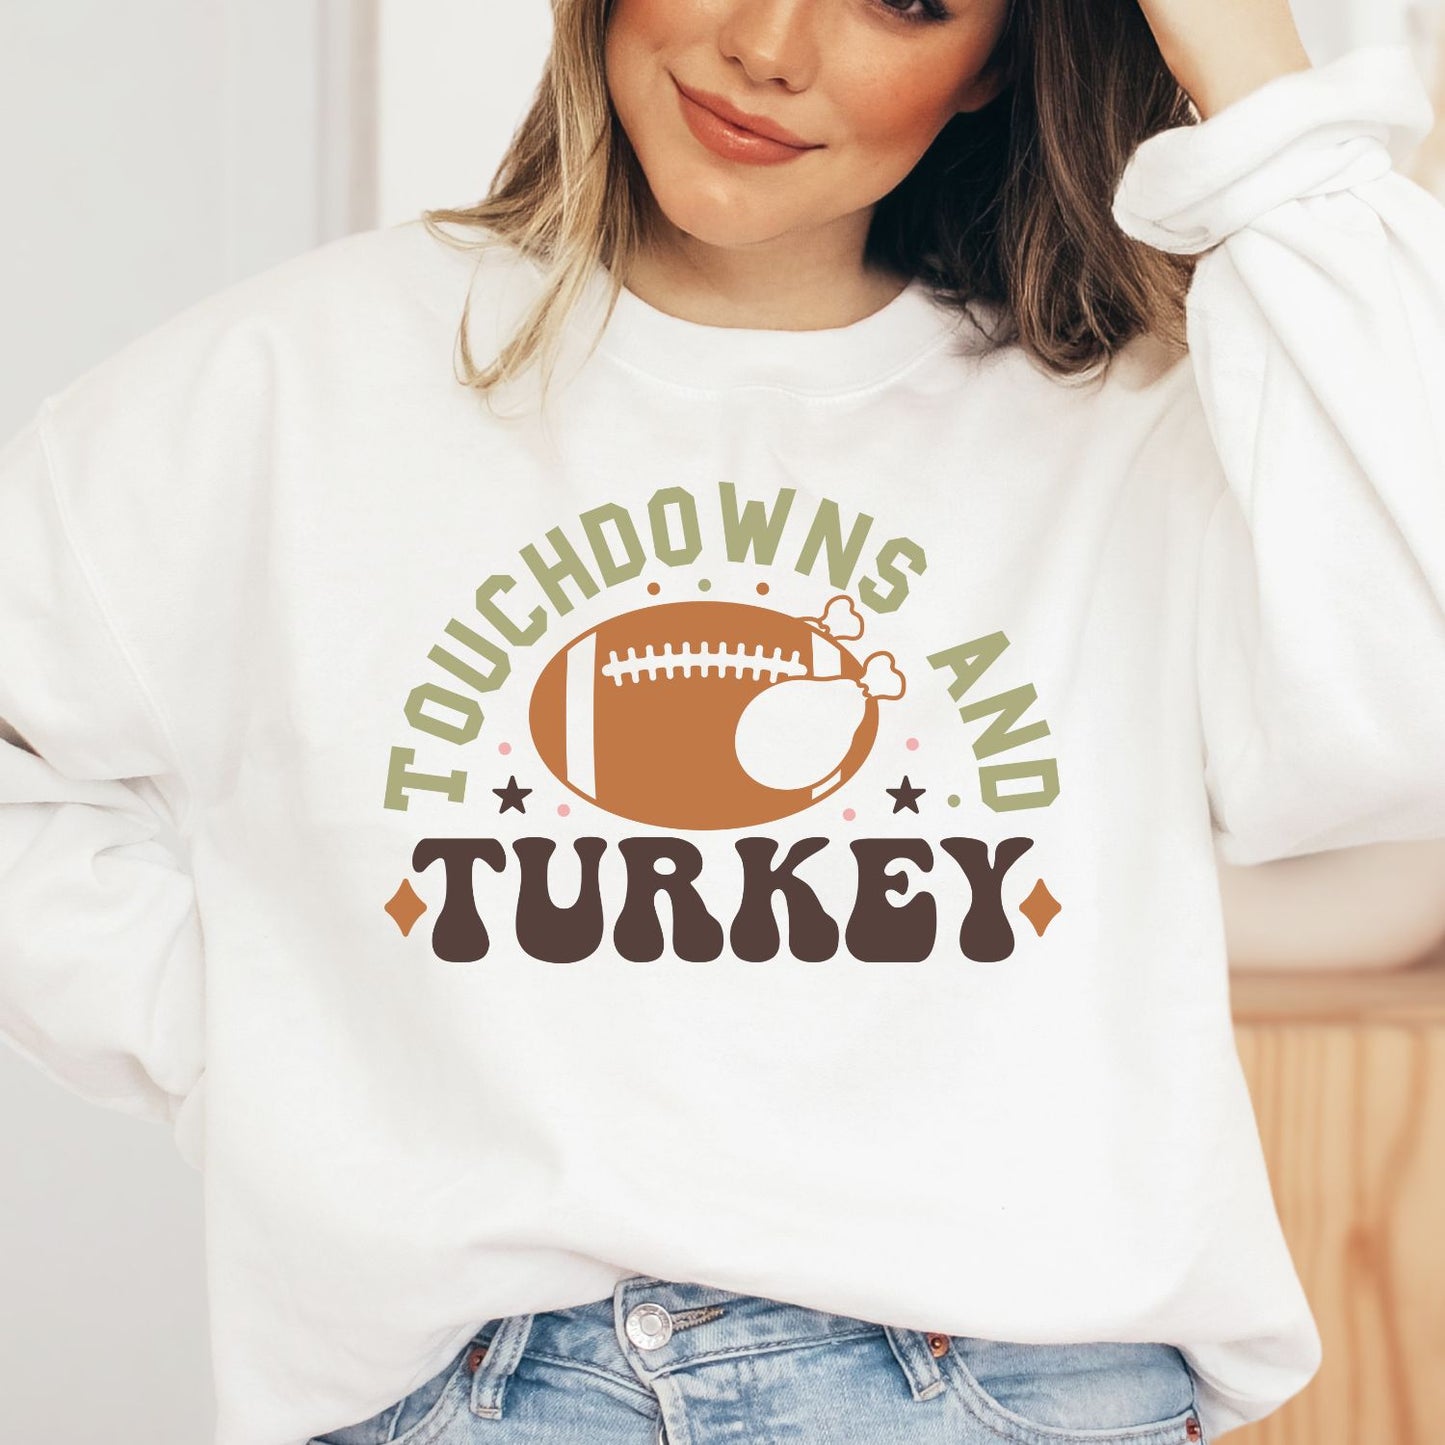 Touchdowns and Turkey Sweatshirt